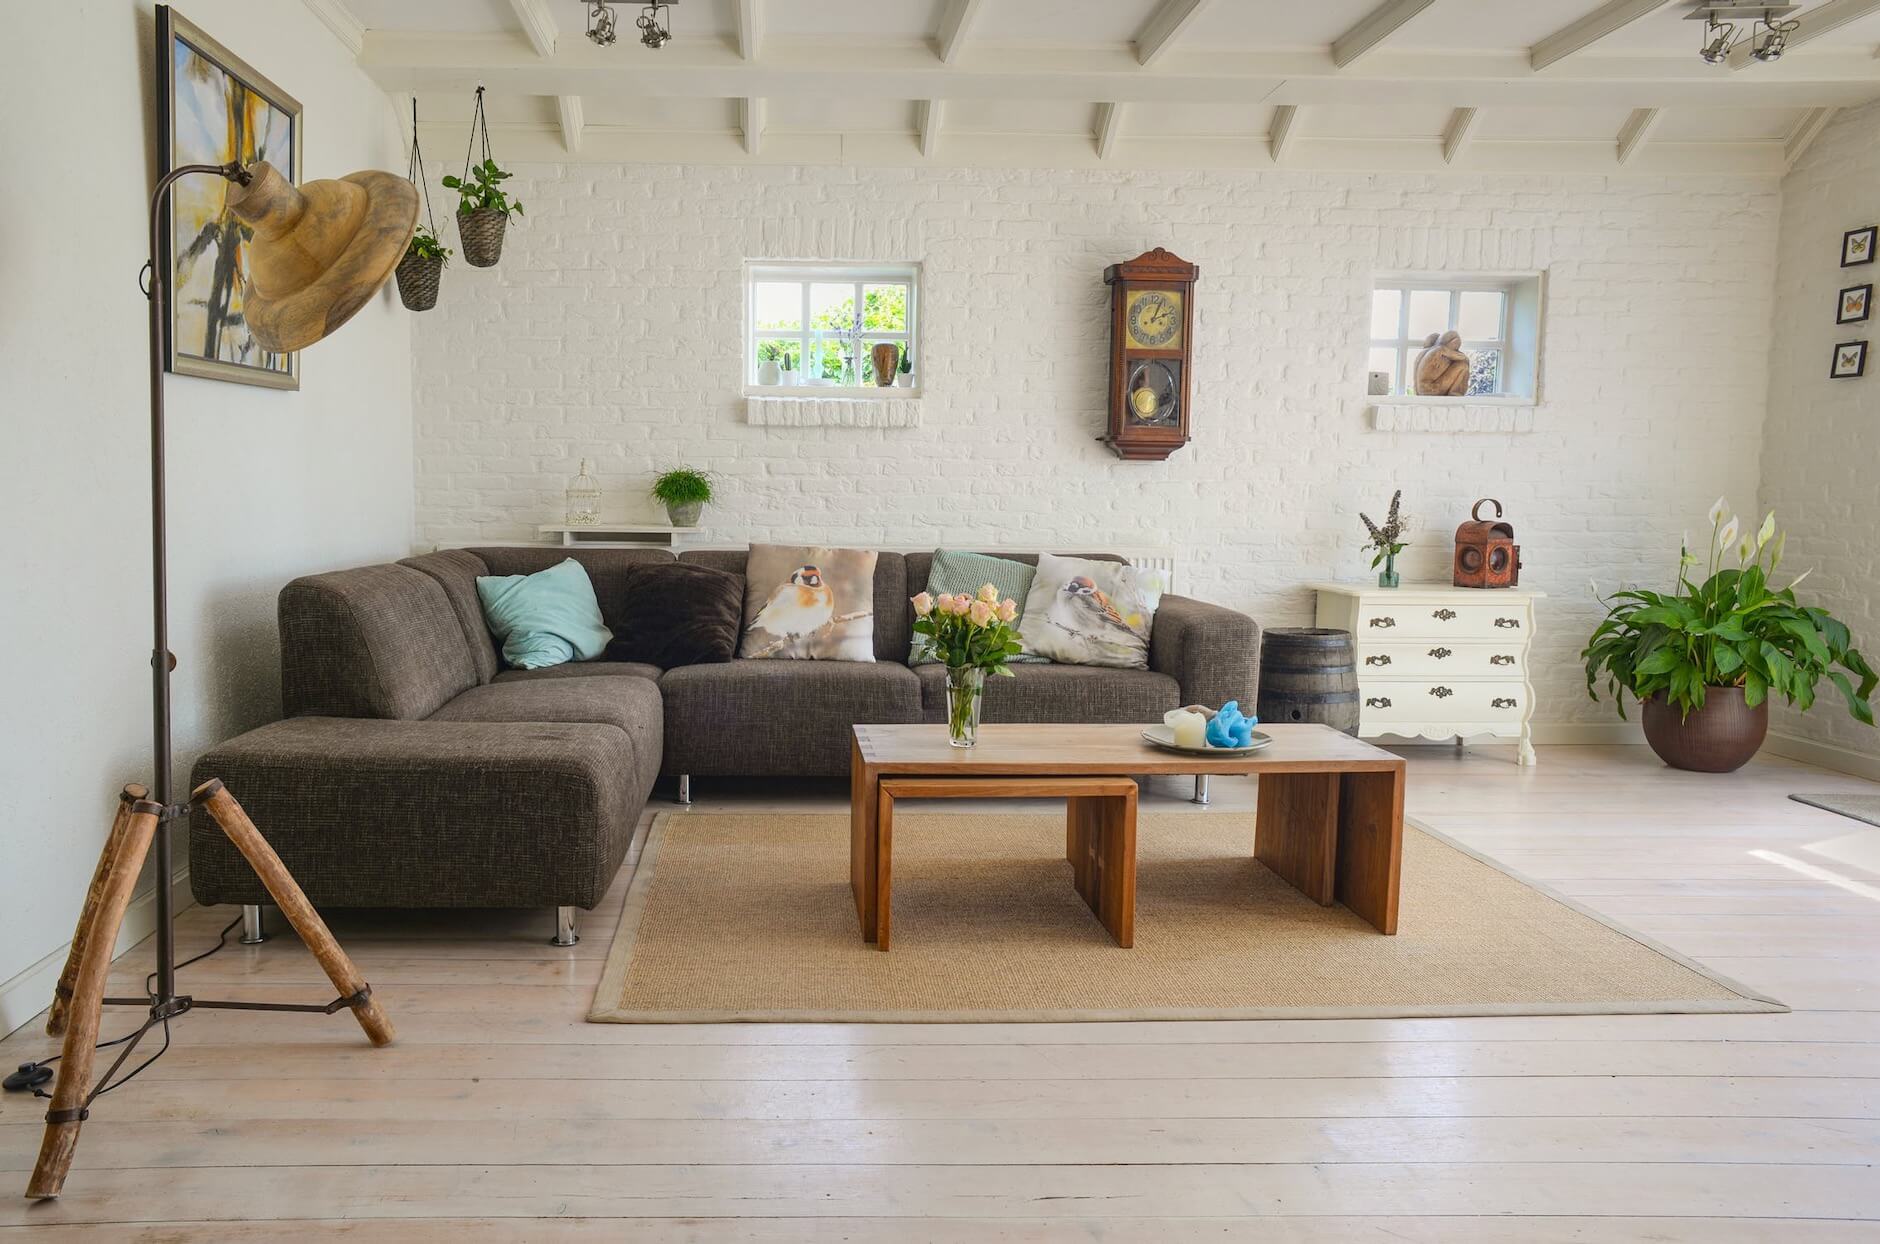 Furnished living room